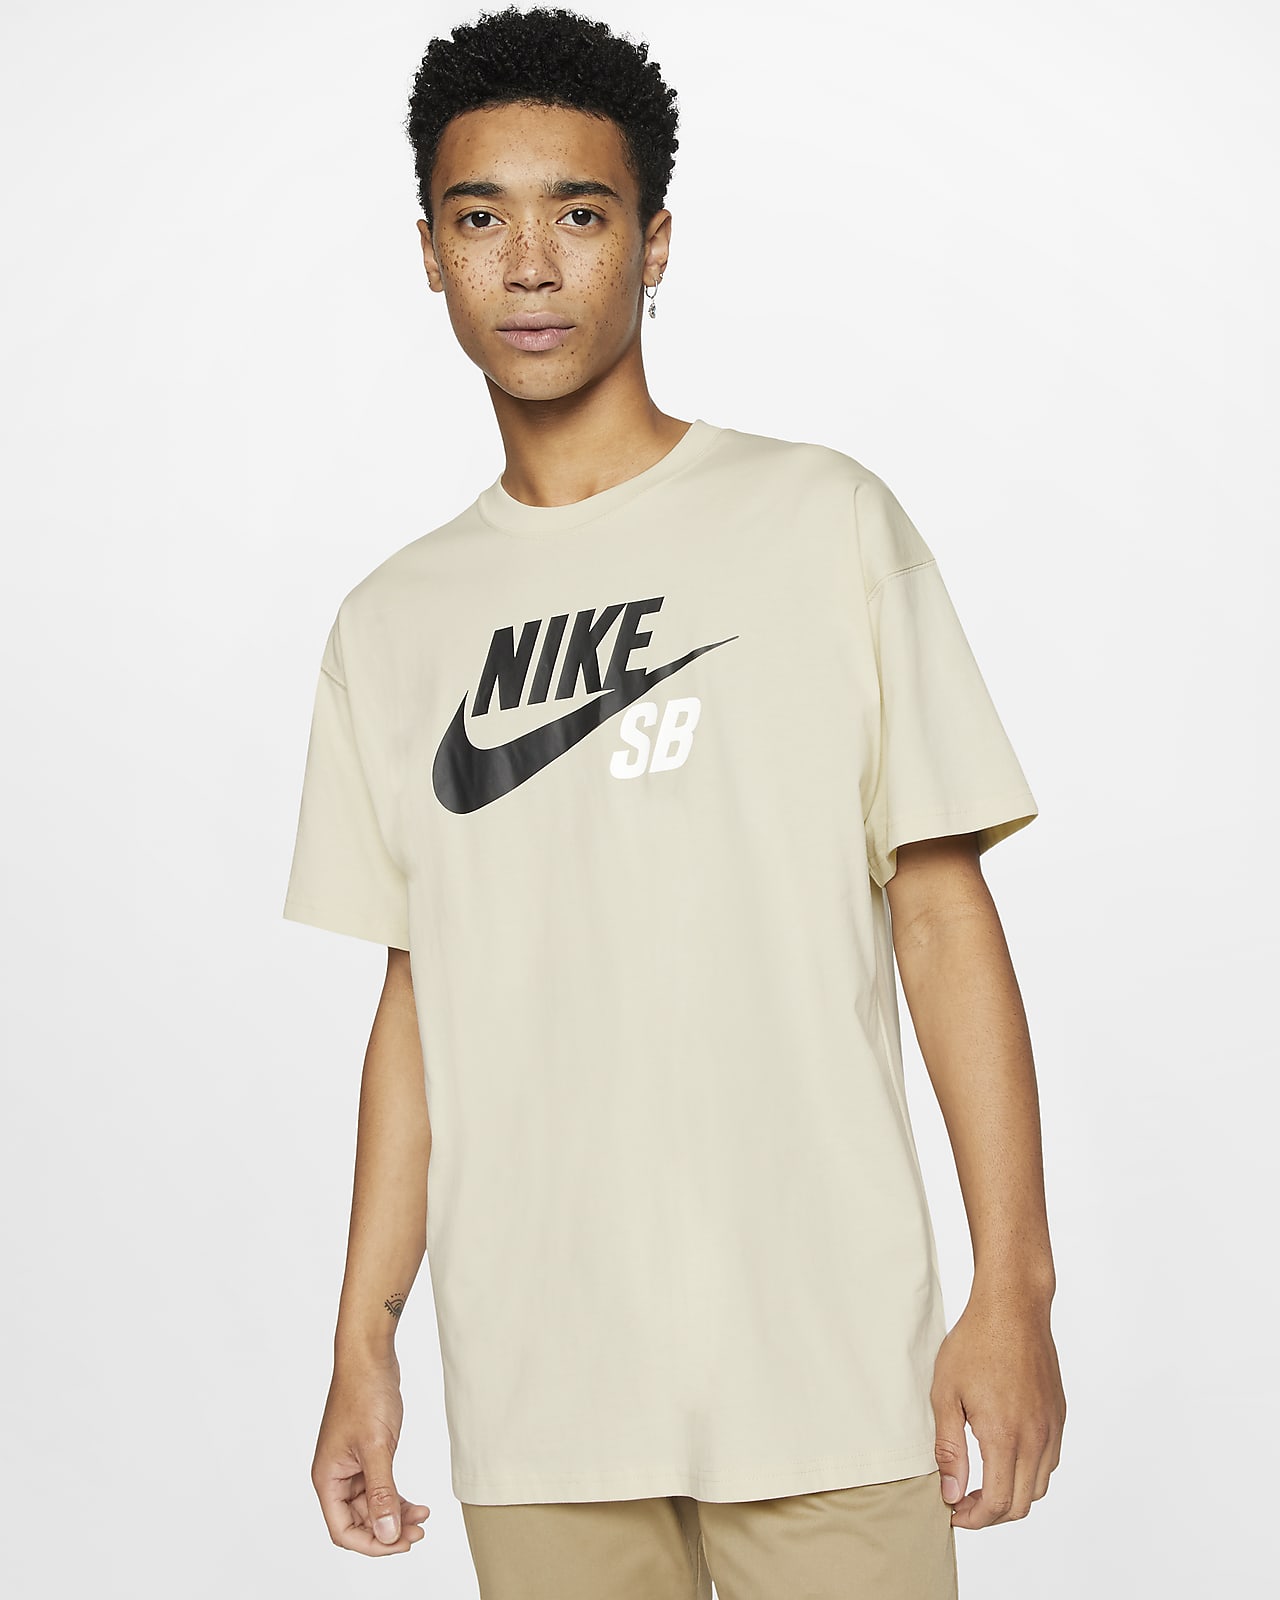 Download Nike SB Men's Logo Skate T-Shirt. Nike GB